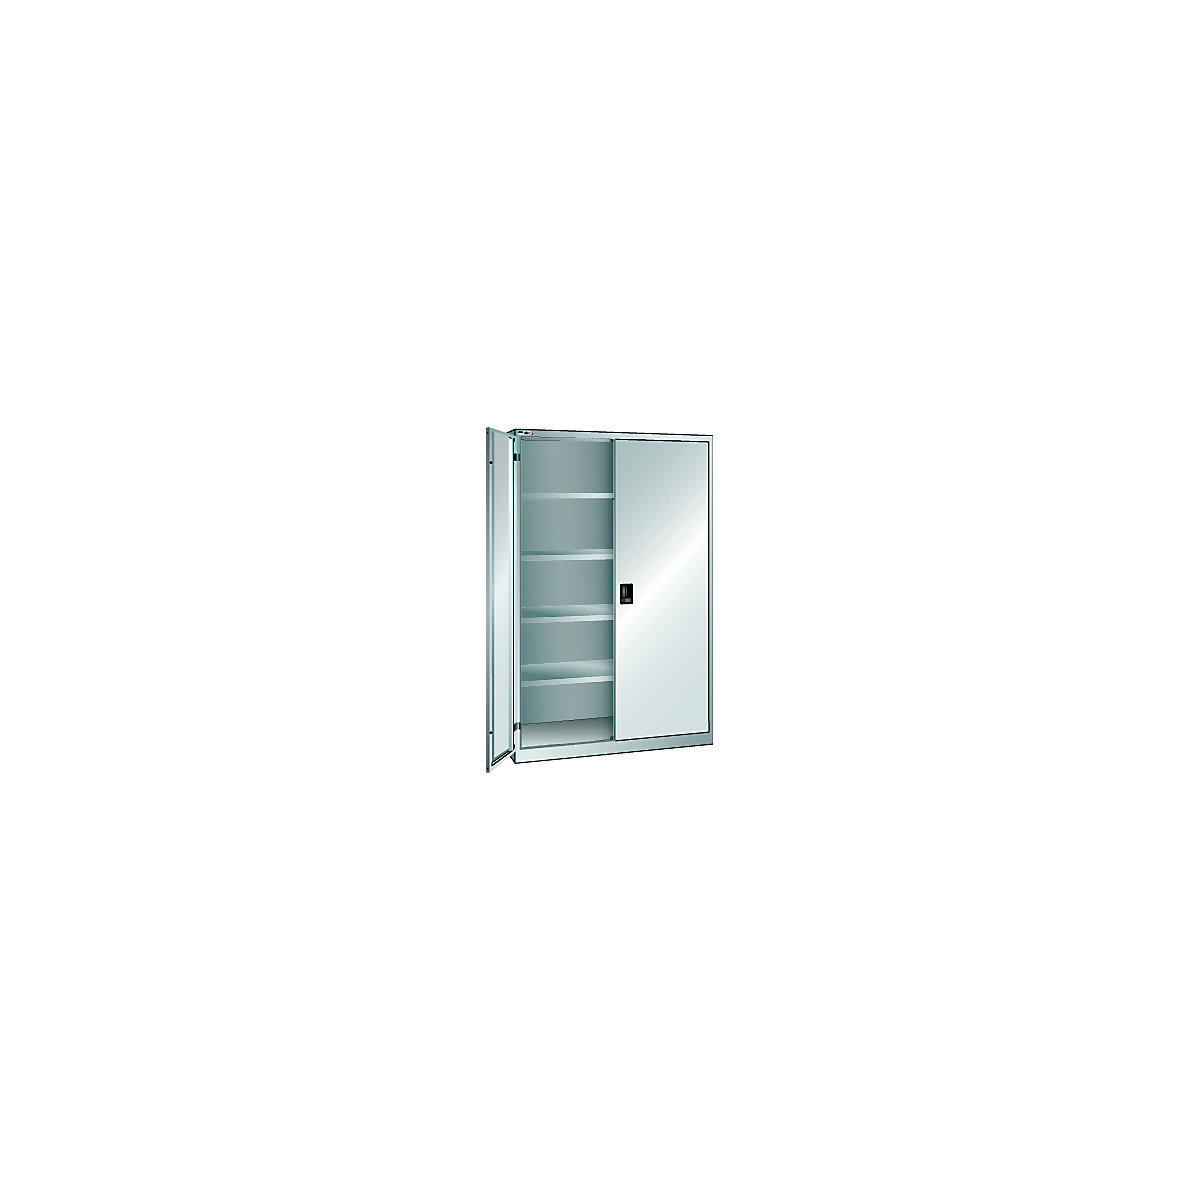 LISTA – Armario de puertas batientes, puertas de chapa maciza, H x A 1950 x 1250 mm, profundidad 400 mm, gris luminoso RAL 7035